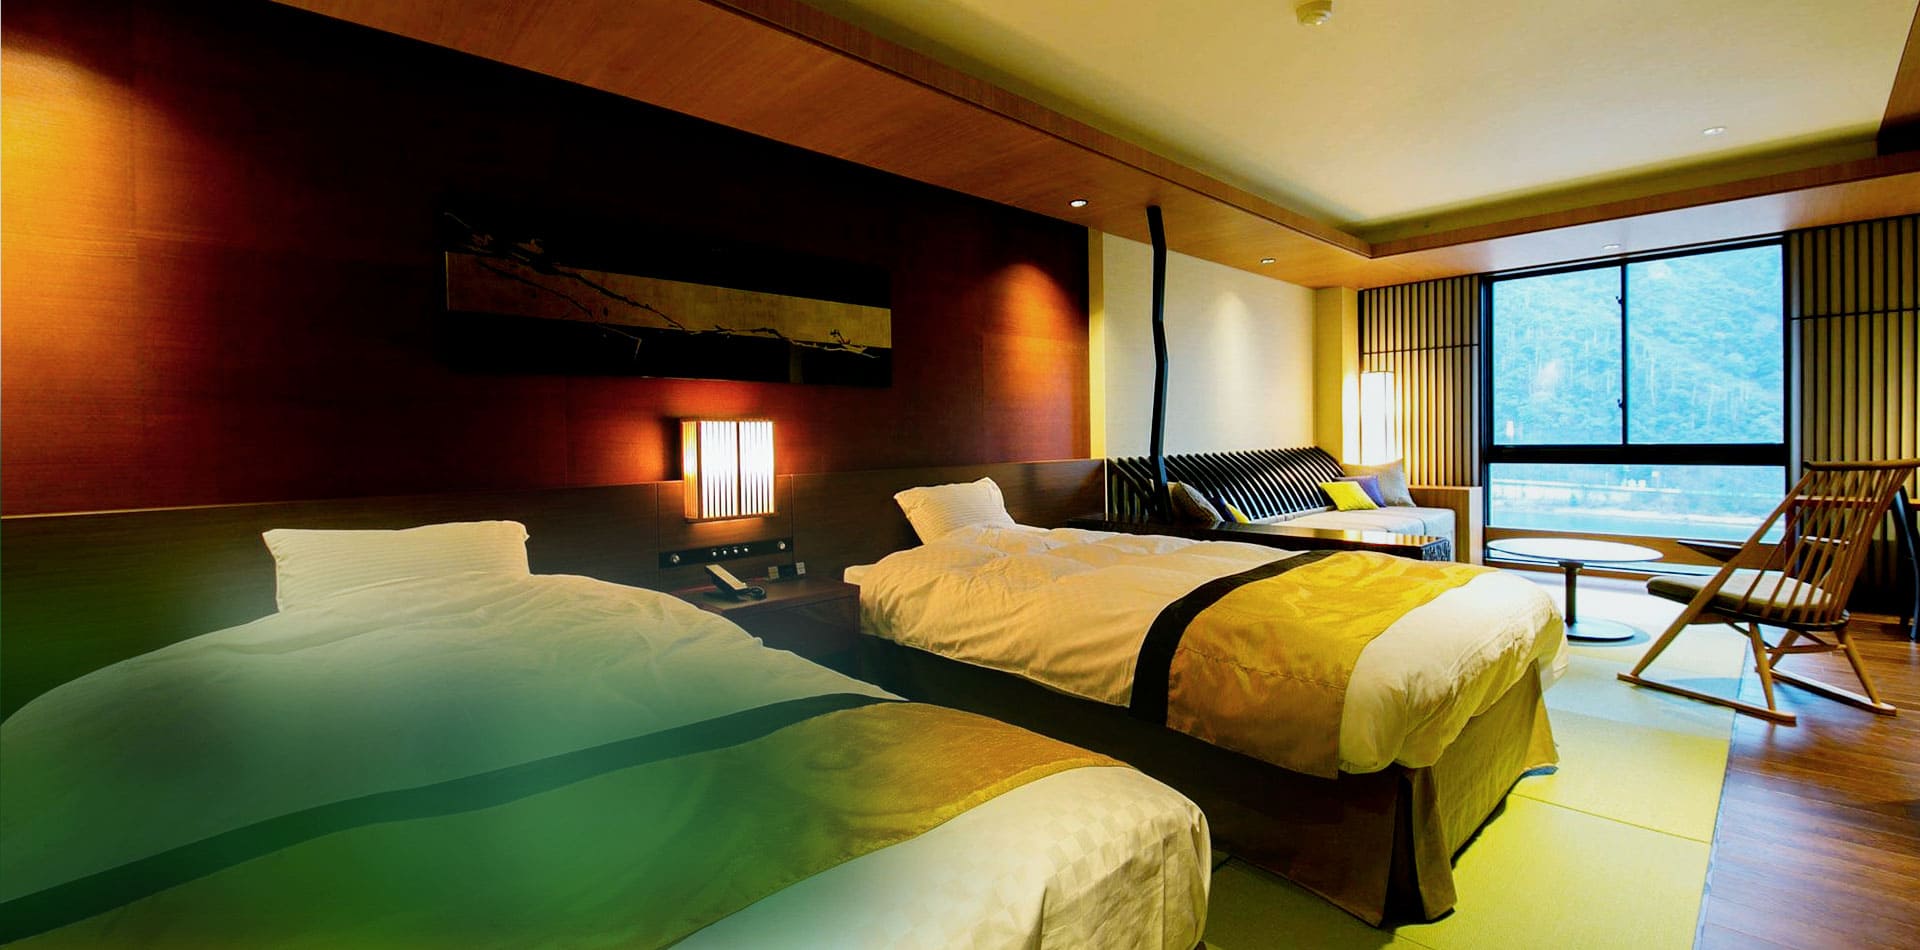 信長の岐阜城、緑深い金華山、清流長良川のほとり 自然豊かなリゾートホテル